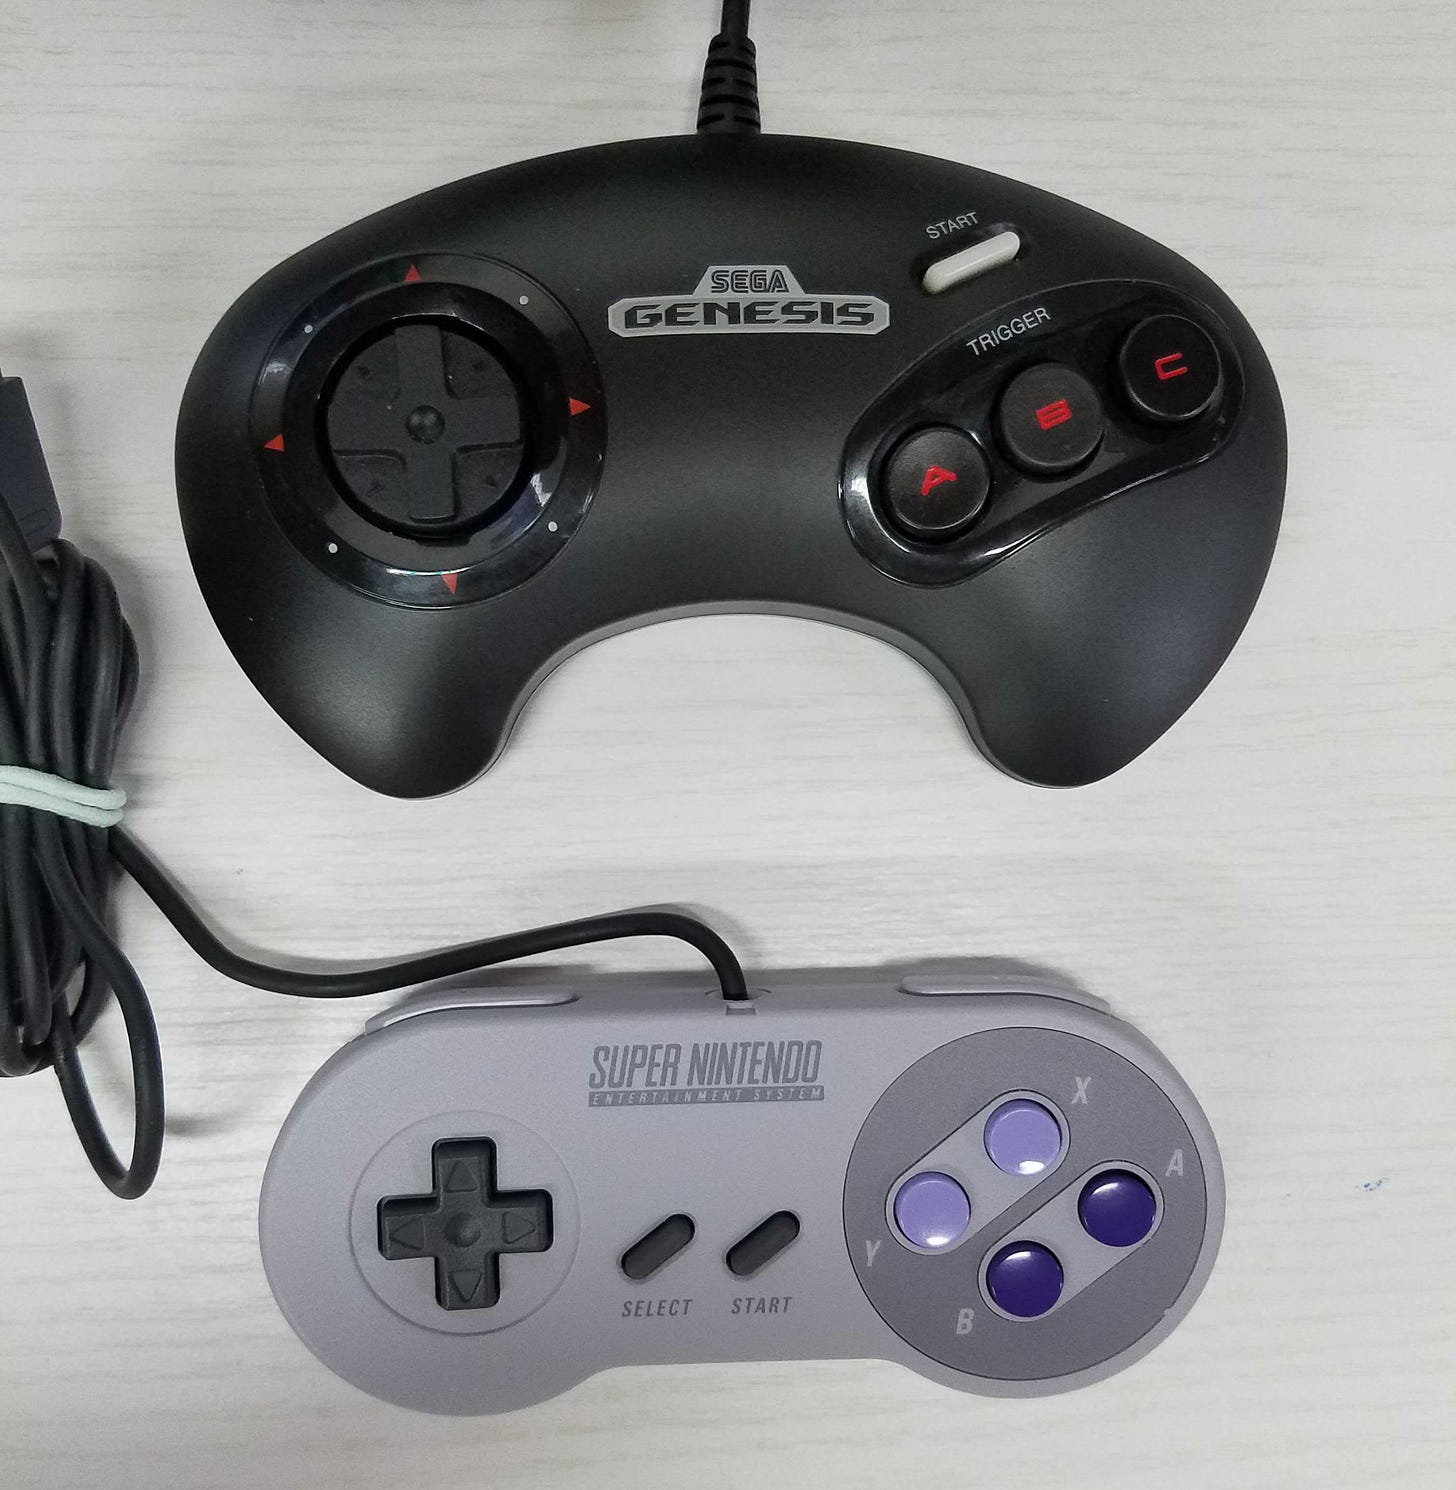 A Sega Genesis replica controller for the Genesis Mini, and a replica SNES controller for the SNES Mini